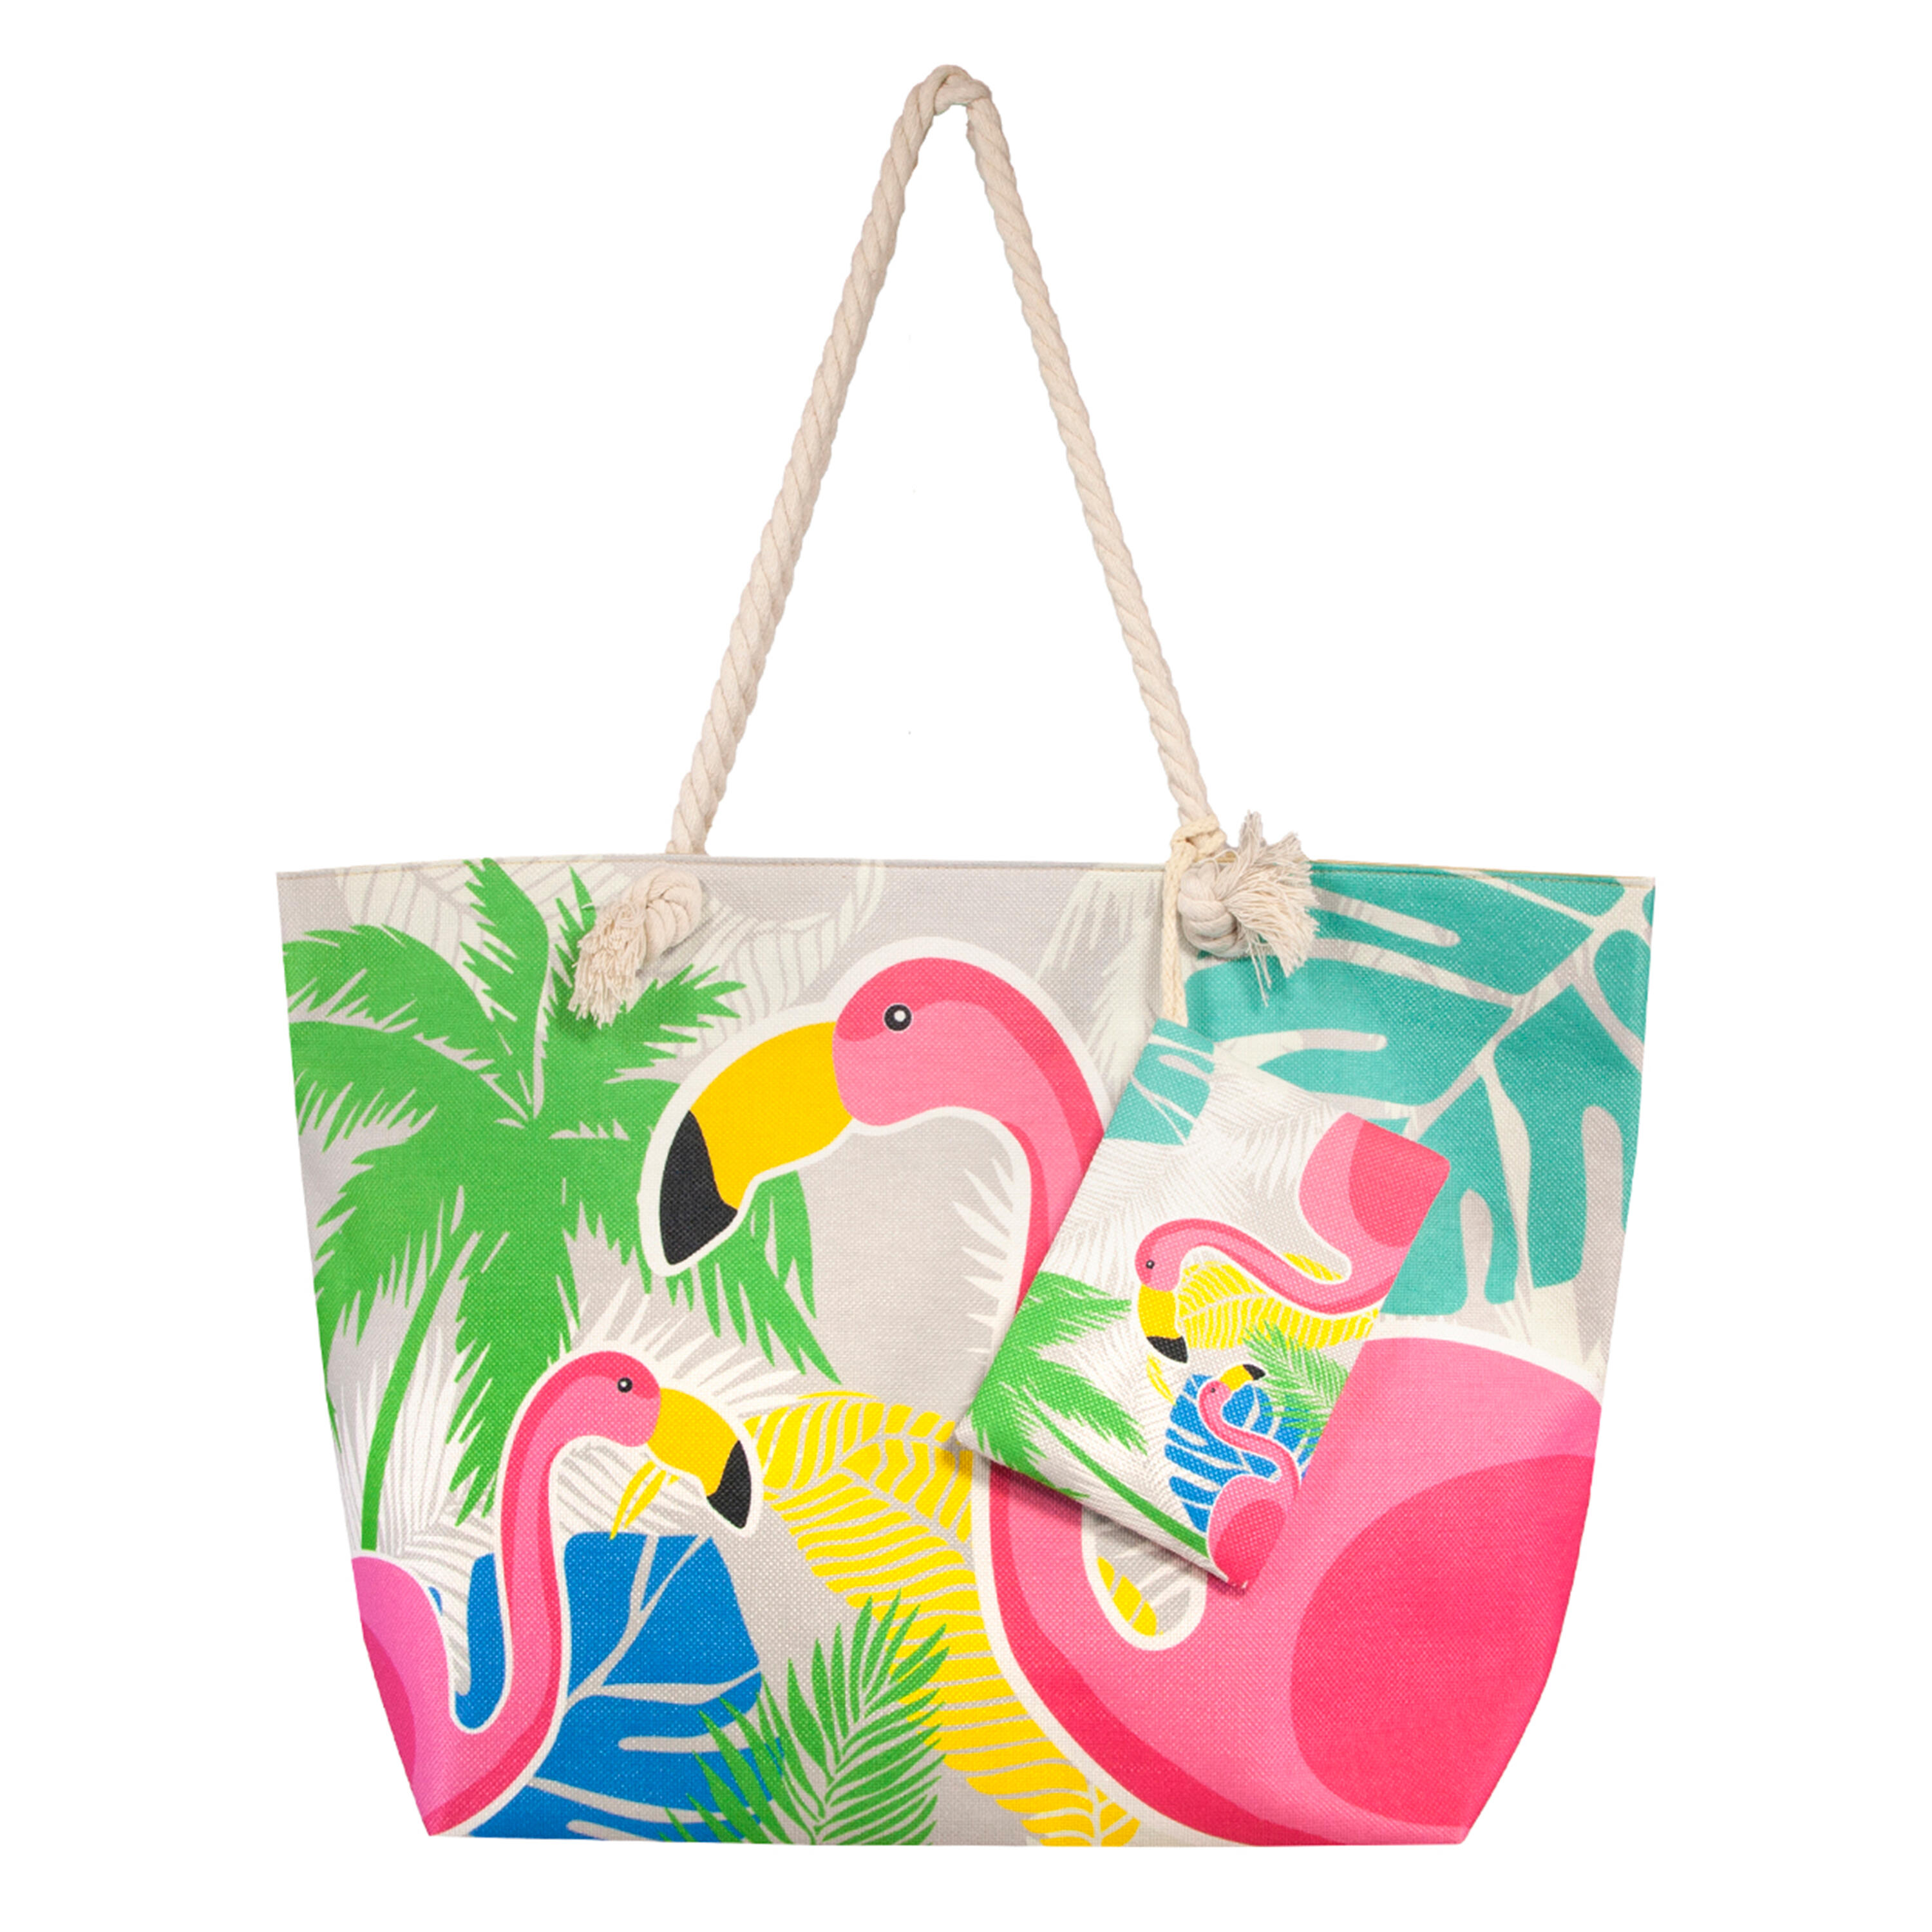 Geantă plajă 59x40x20 cm Imprimeu flamingo